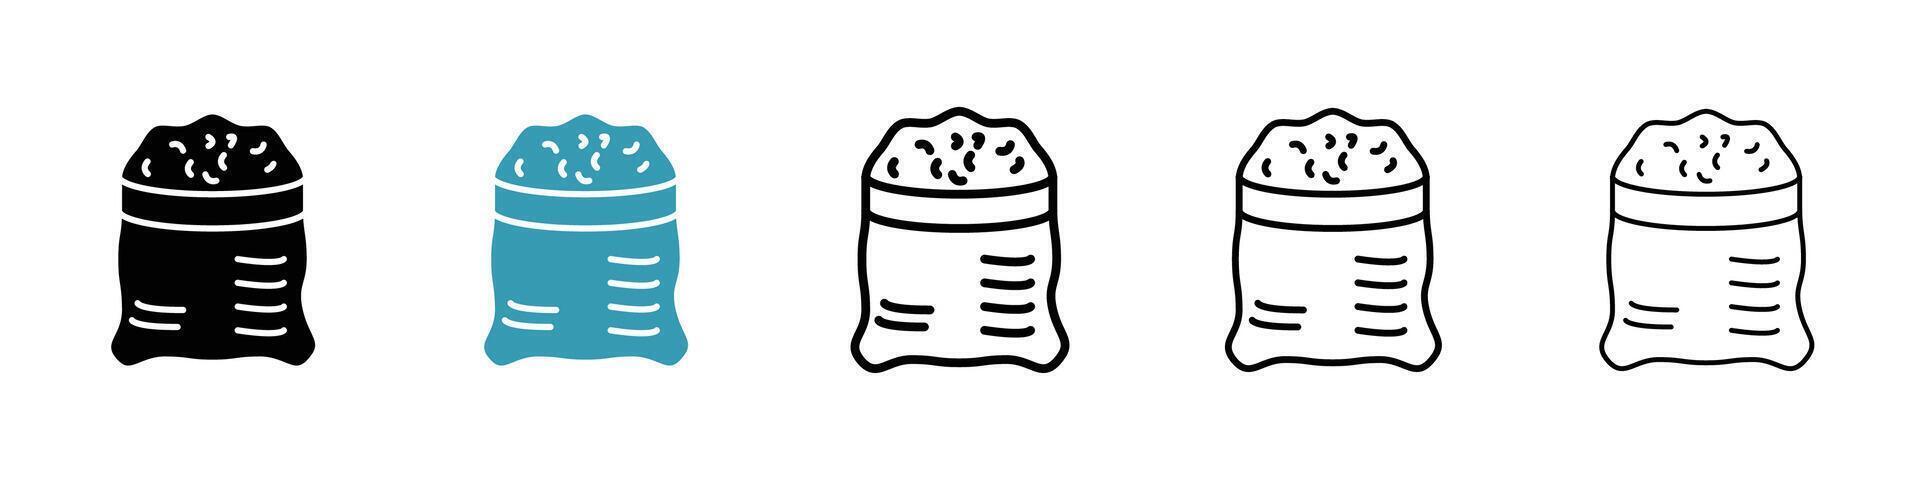 Flour bag icon vector